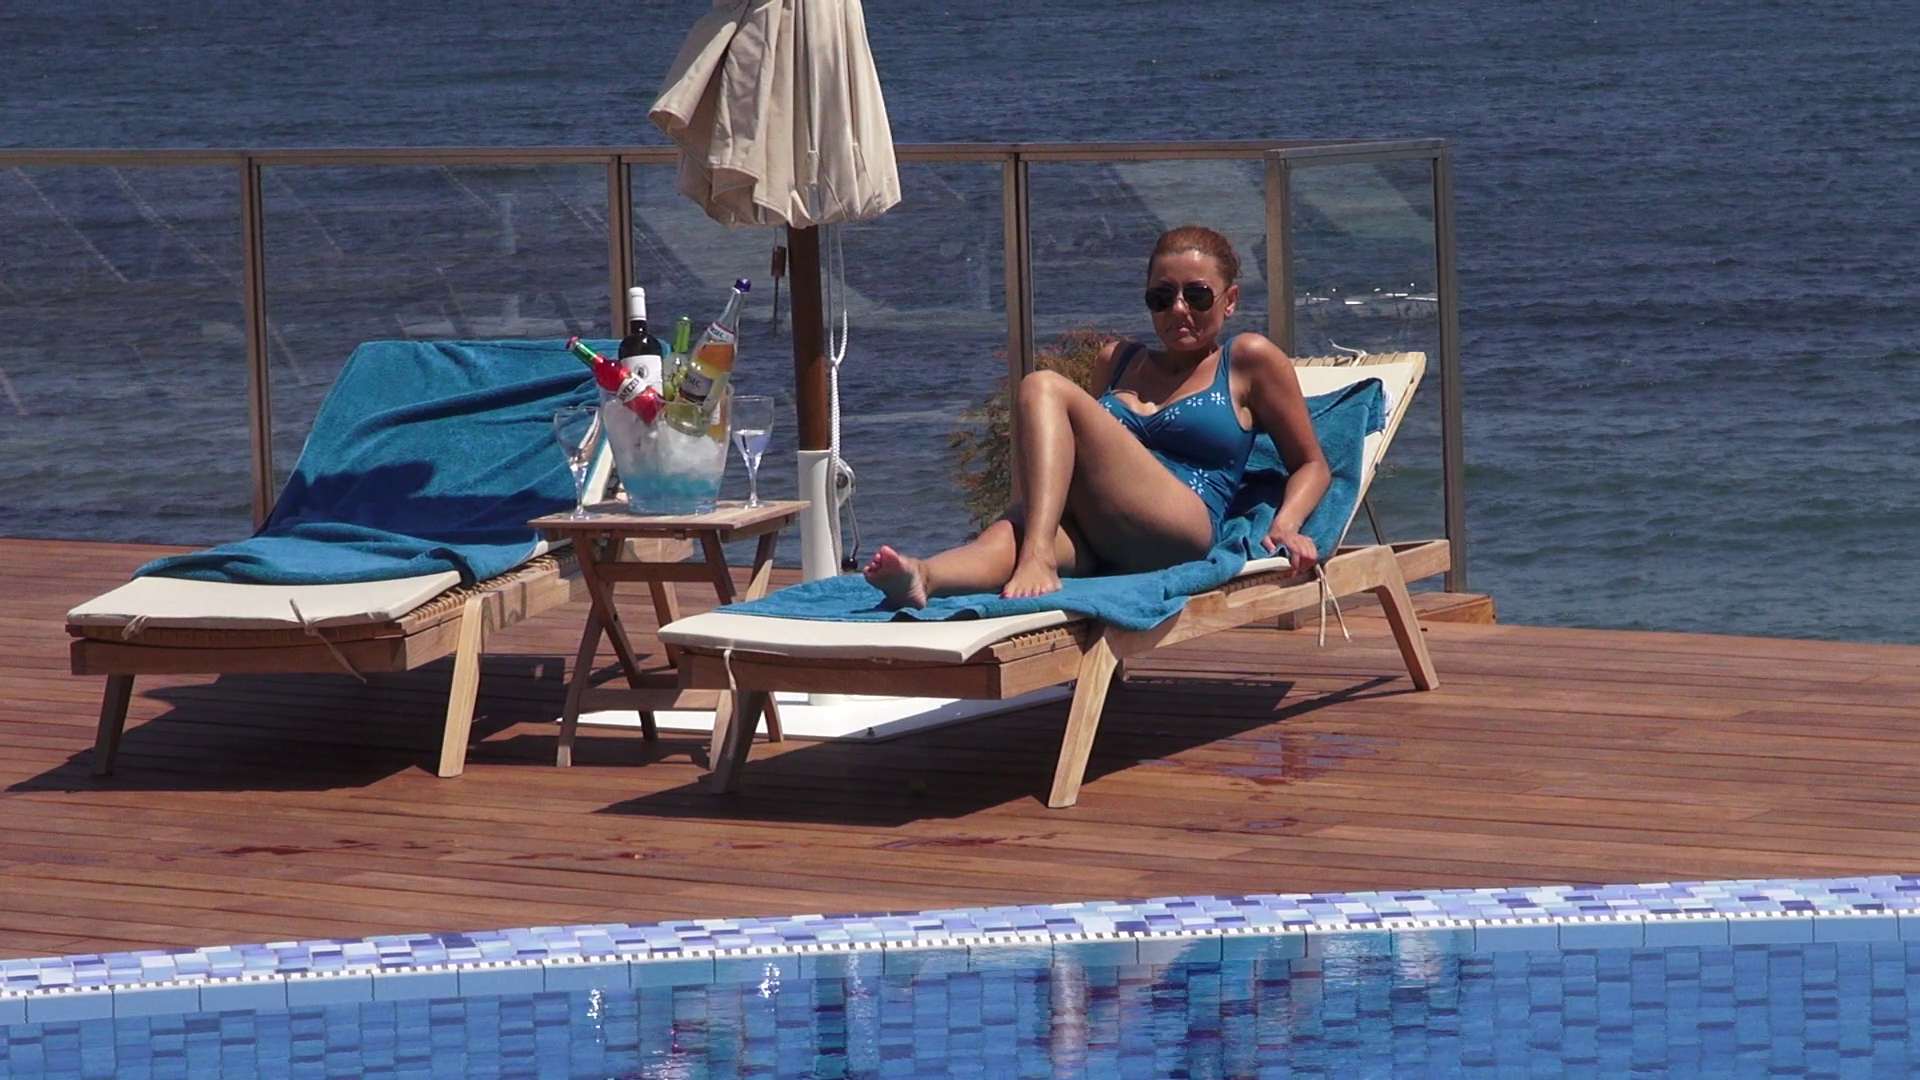 Emilia se relaxeaza la marginea unei piscine de la mare